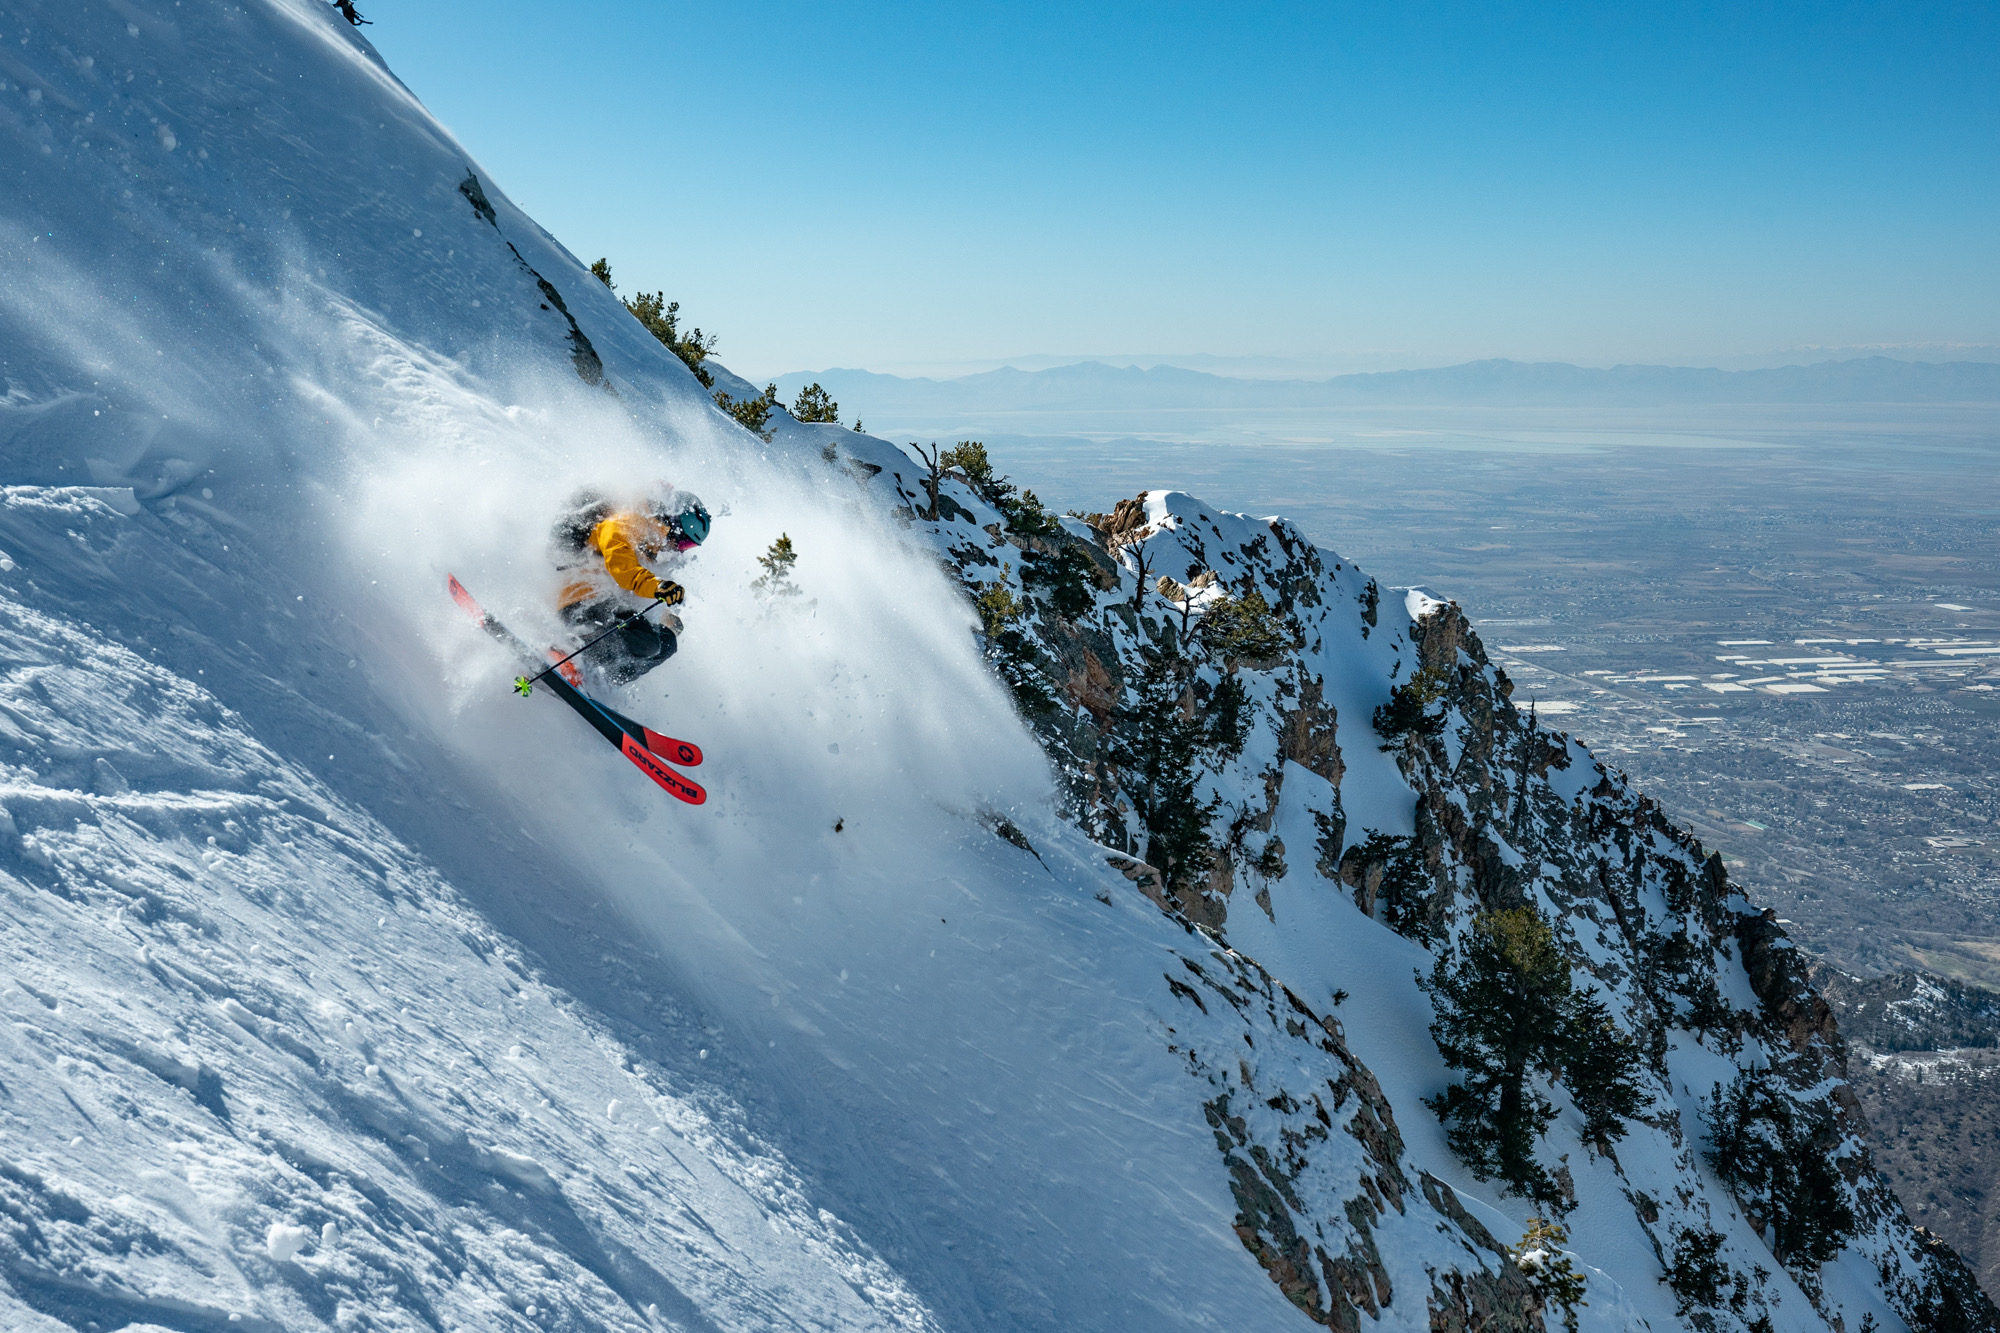 Warren Miller skiing photo